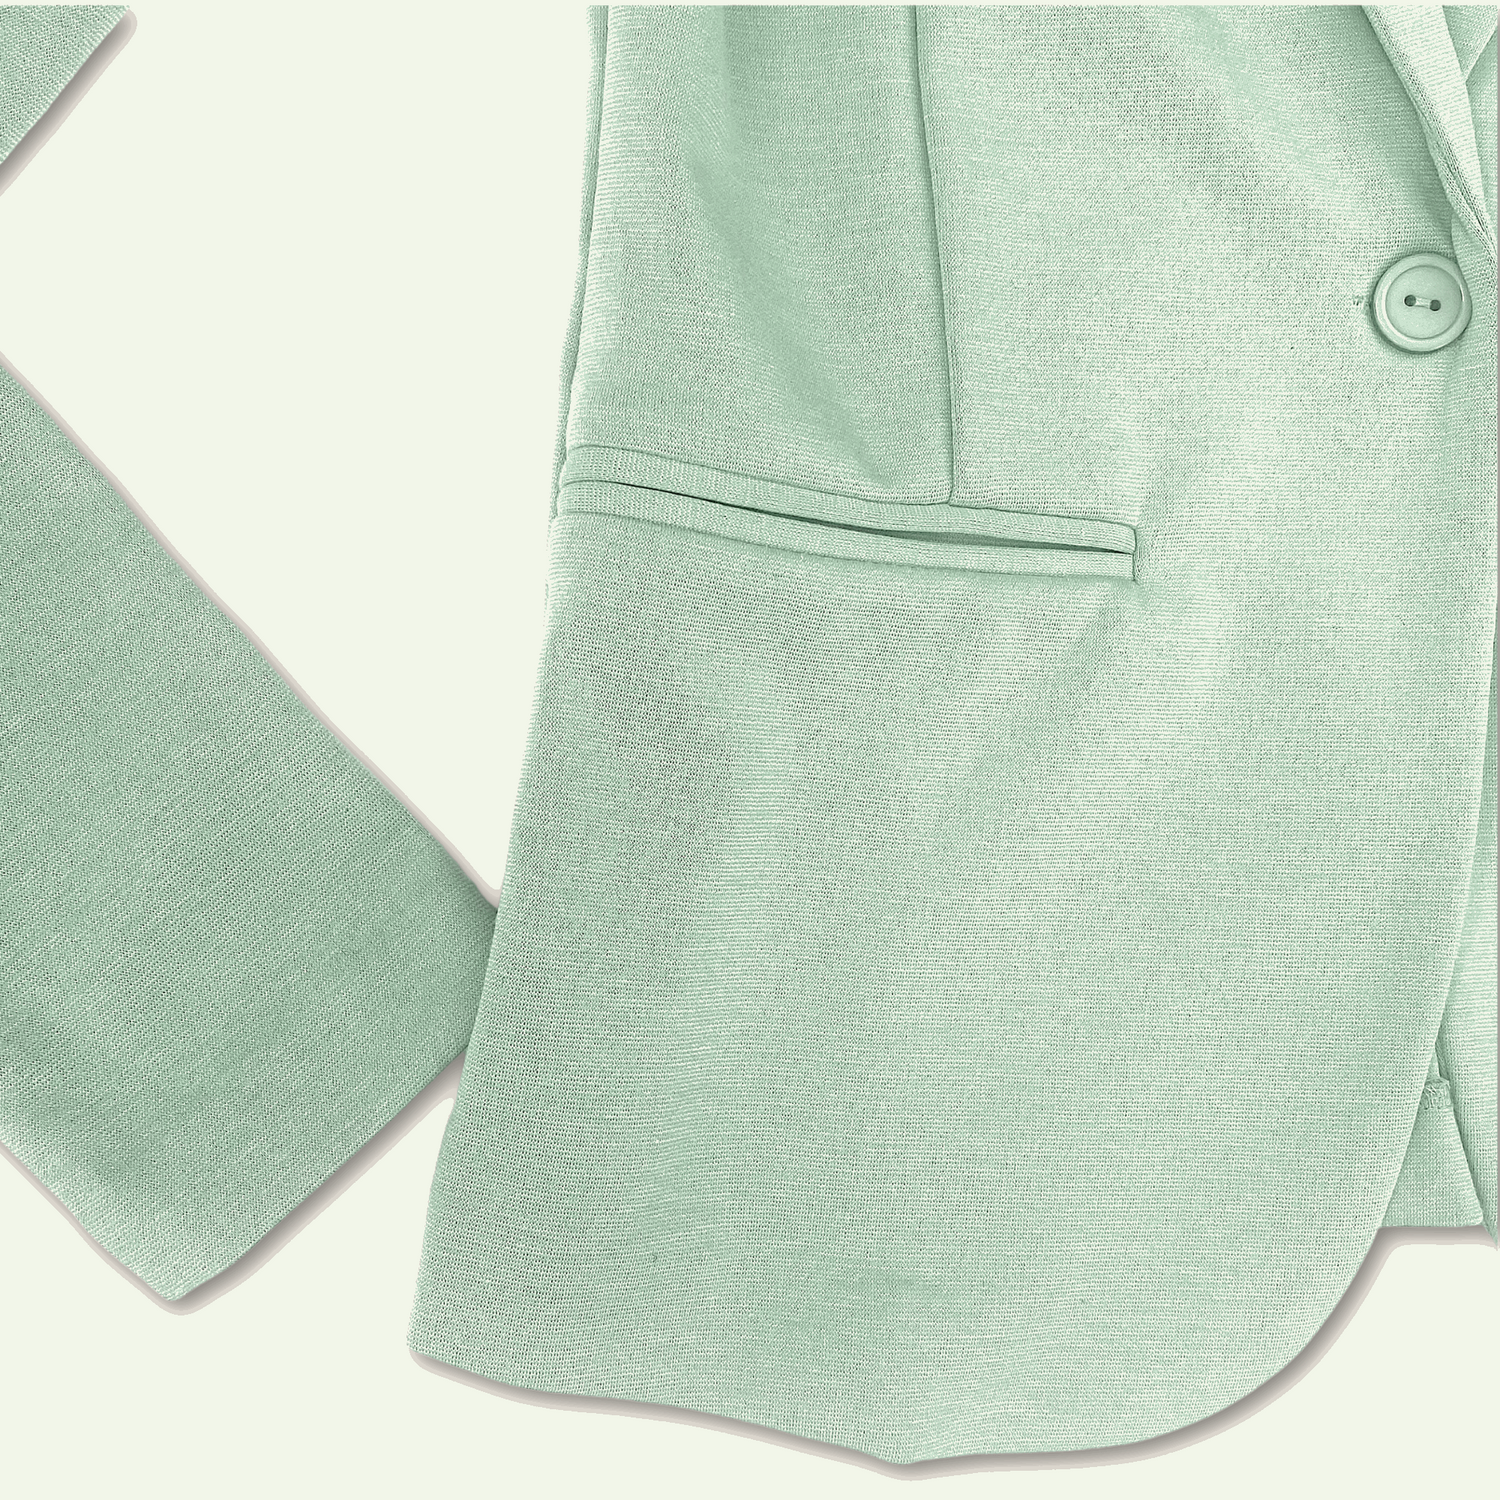 Ichi Mint Green Button Up Blazer - Size XS - Ichi - Blazers